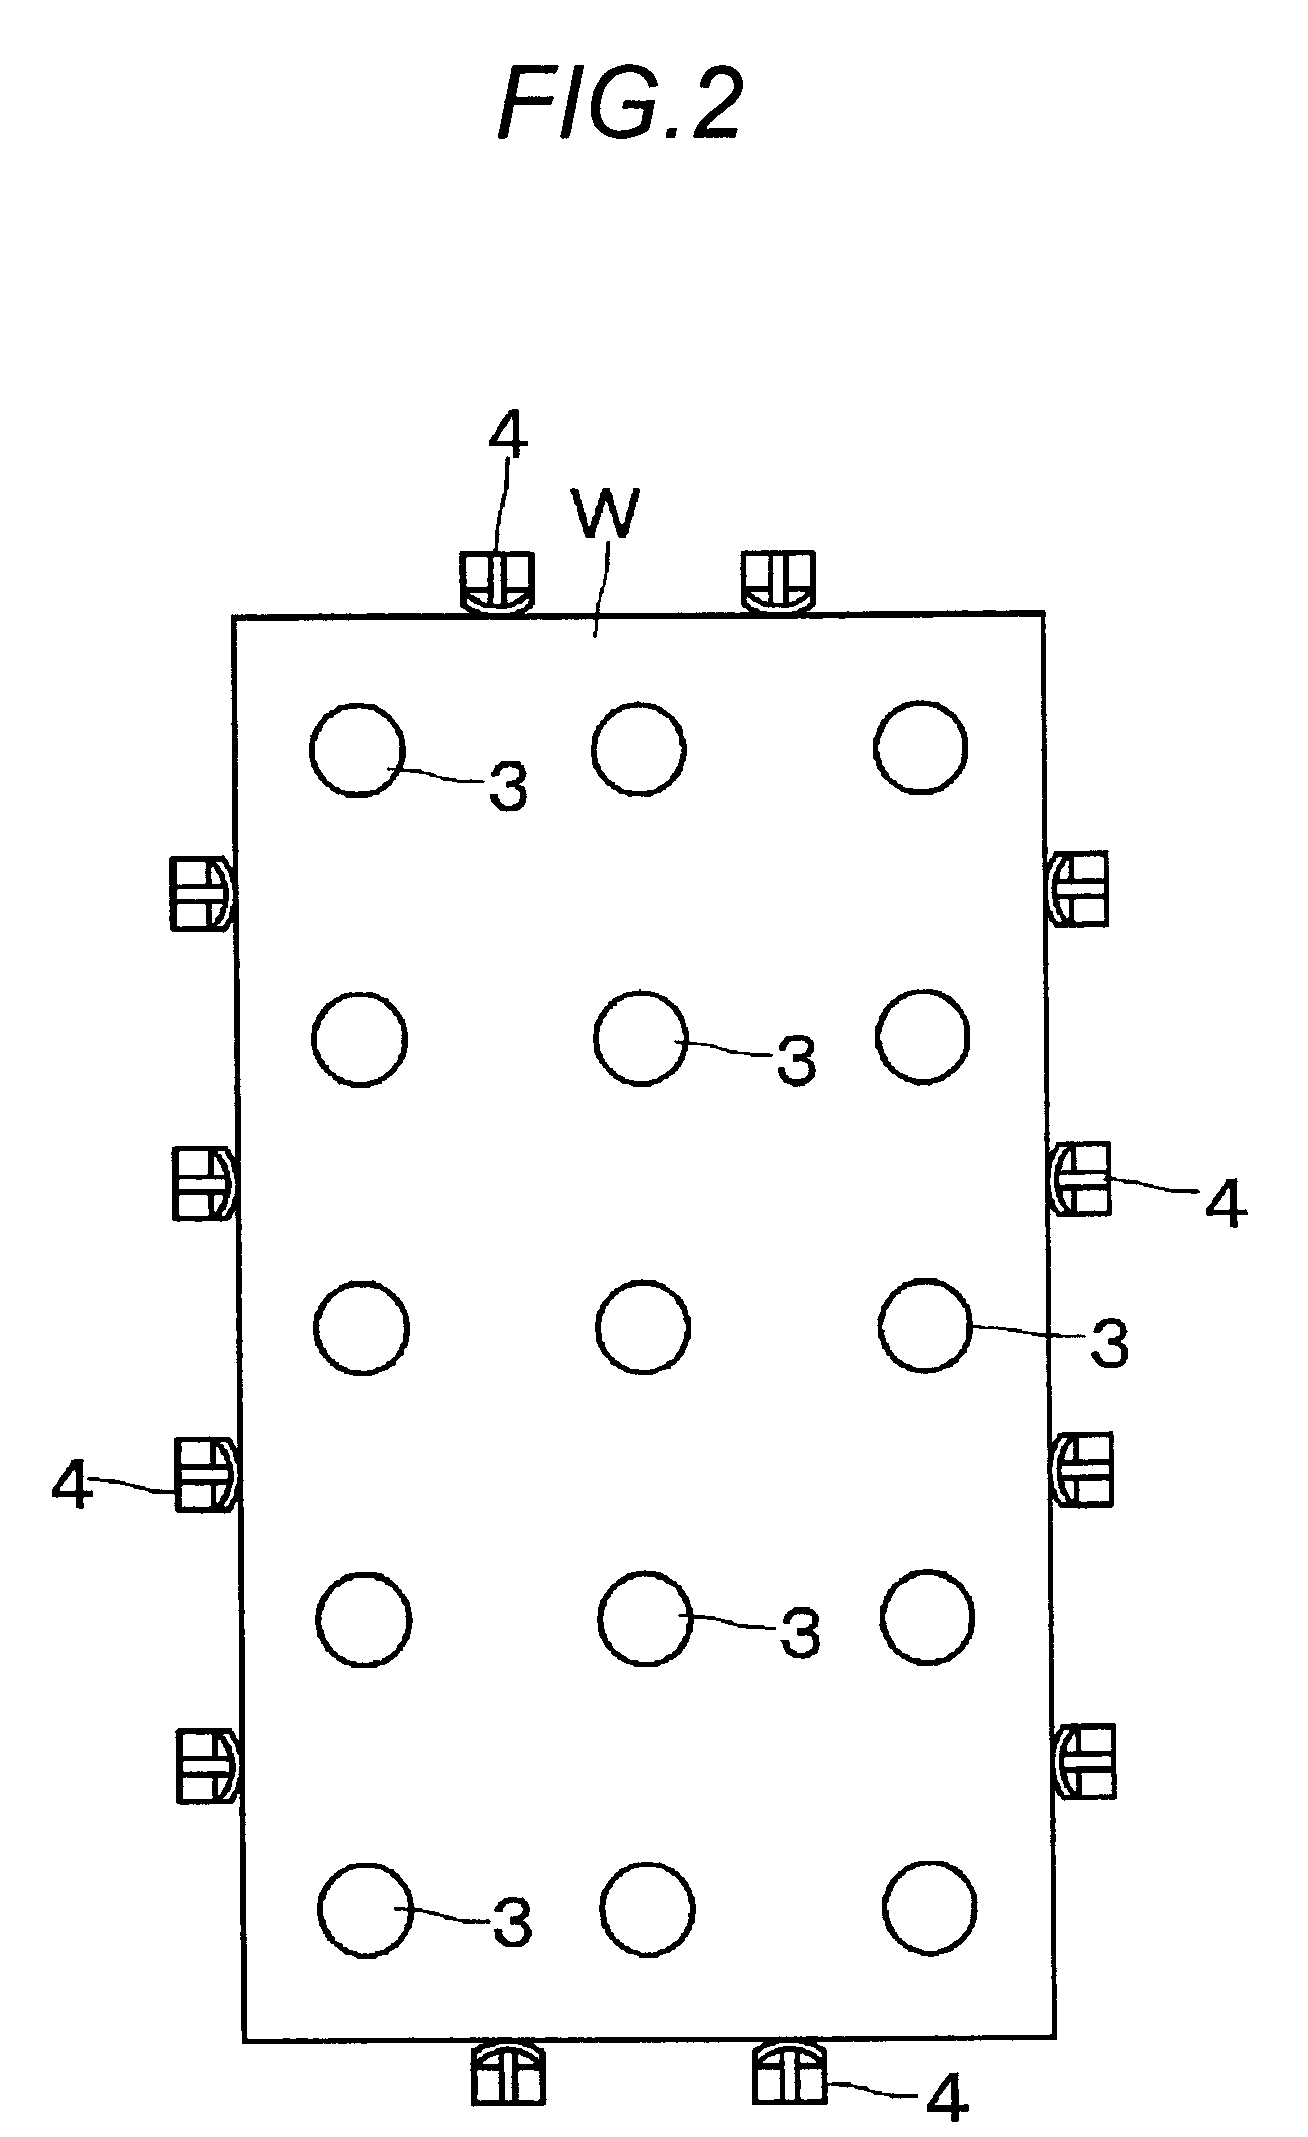 Method of separating plate member